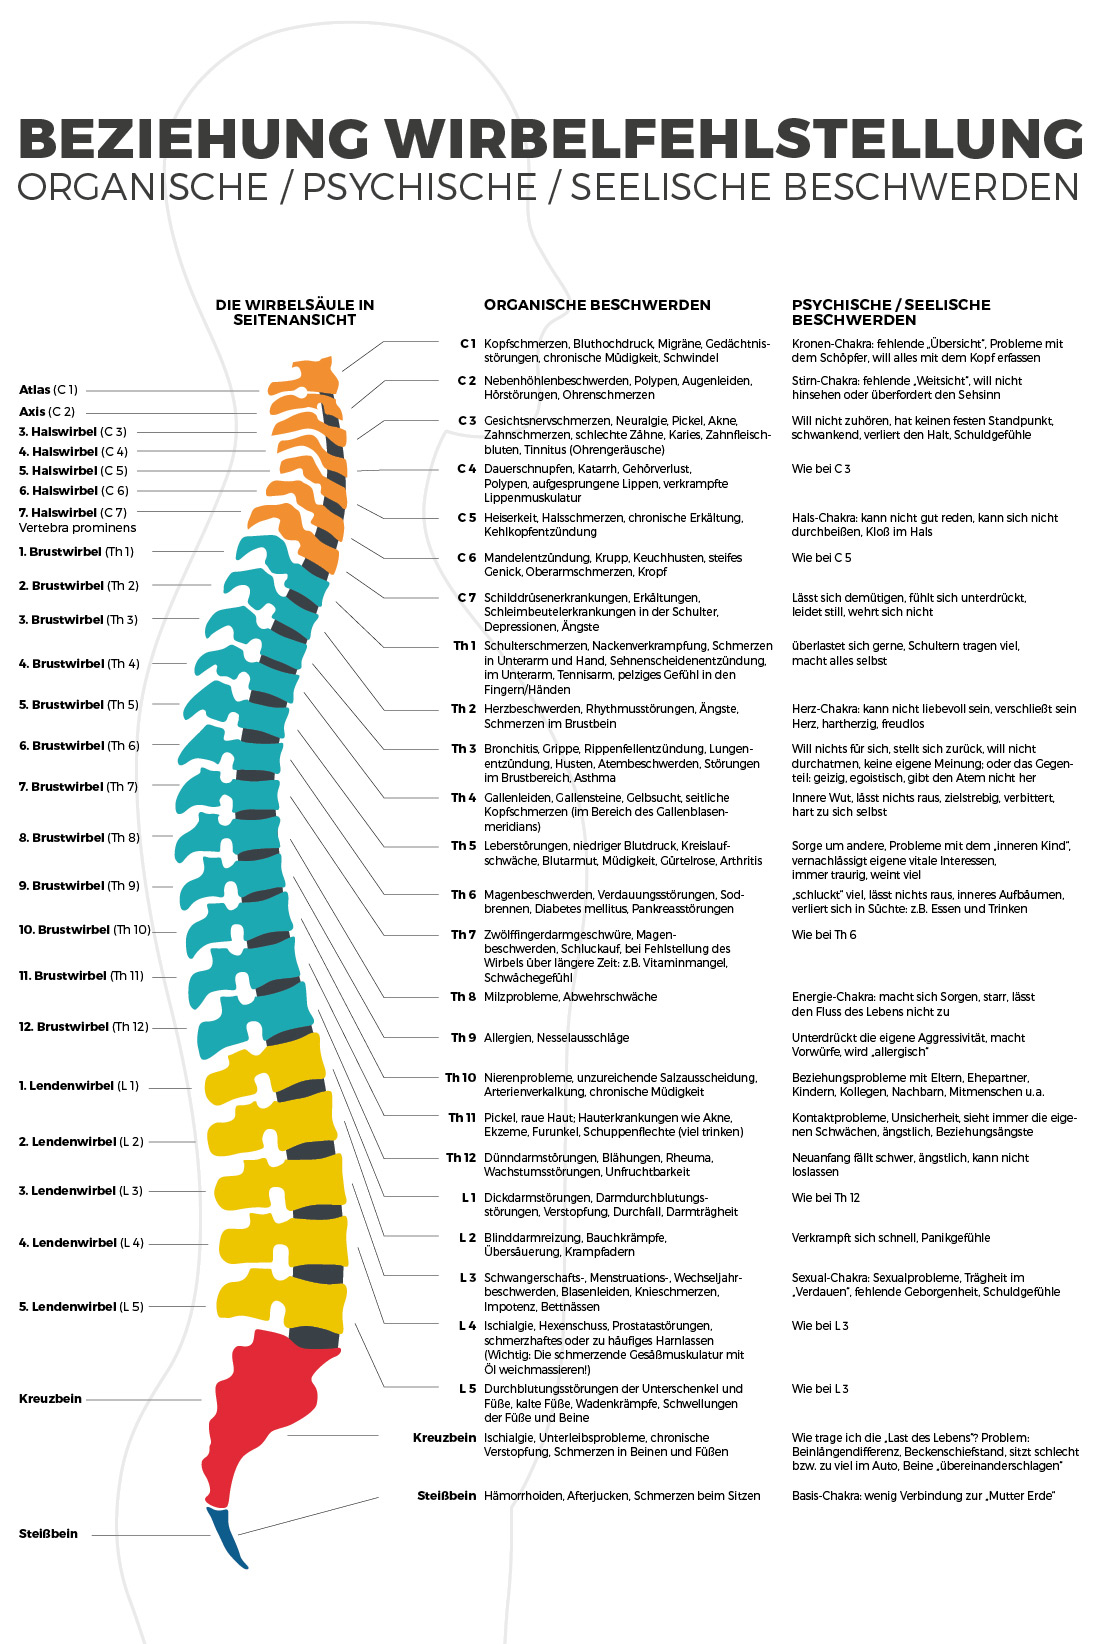 Schematische Darstellung einer Wirbelsäule mit Bezeichnung der Wirbel und Zuordnung von Krankheitsbildern